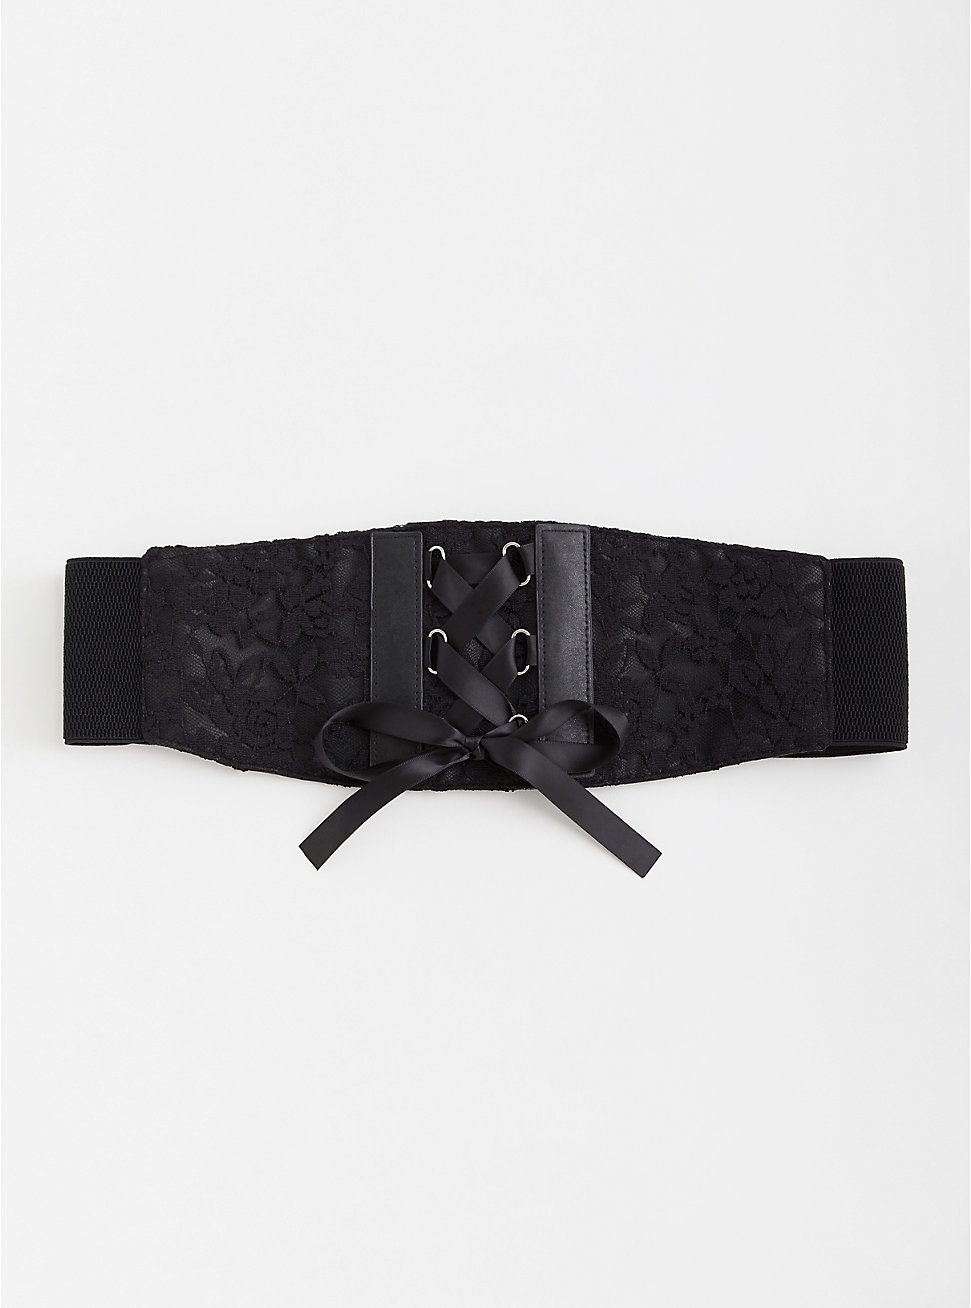 Plus Size Lace-Up Corset Belt - Black, BLACK, hi-res